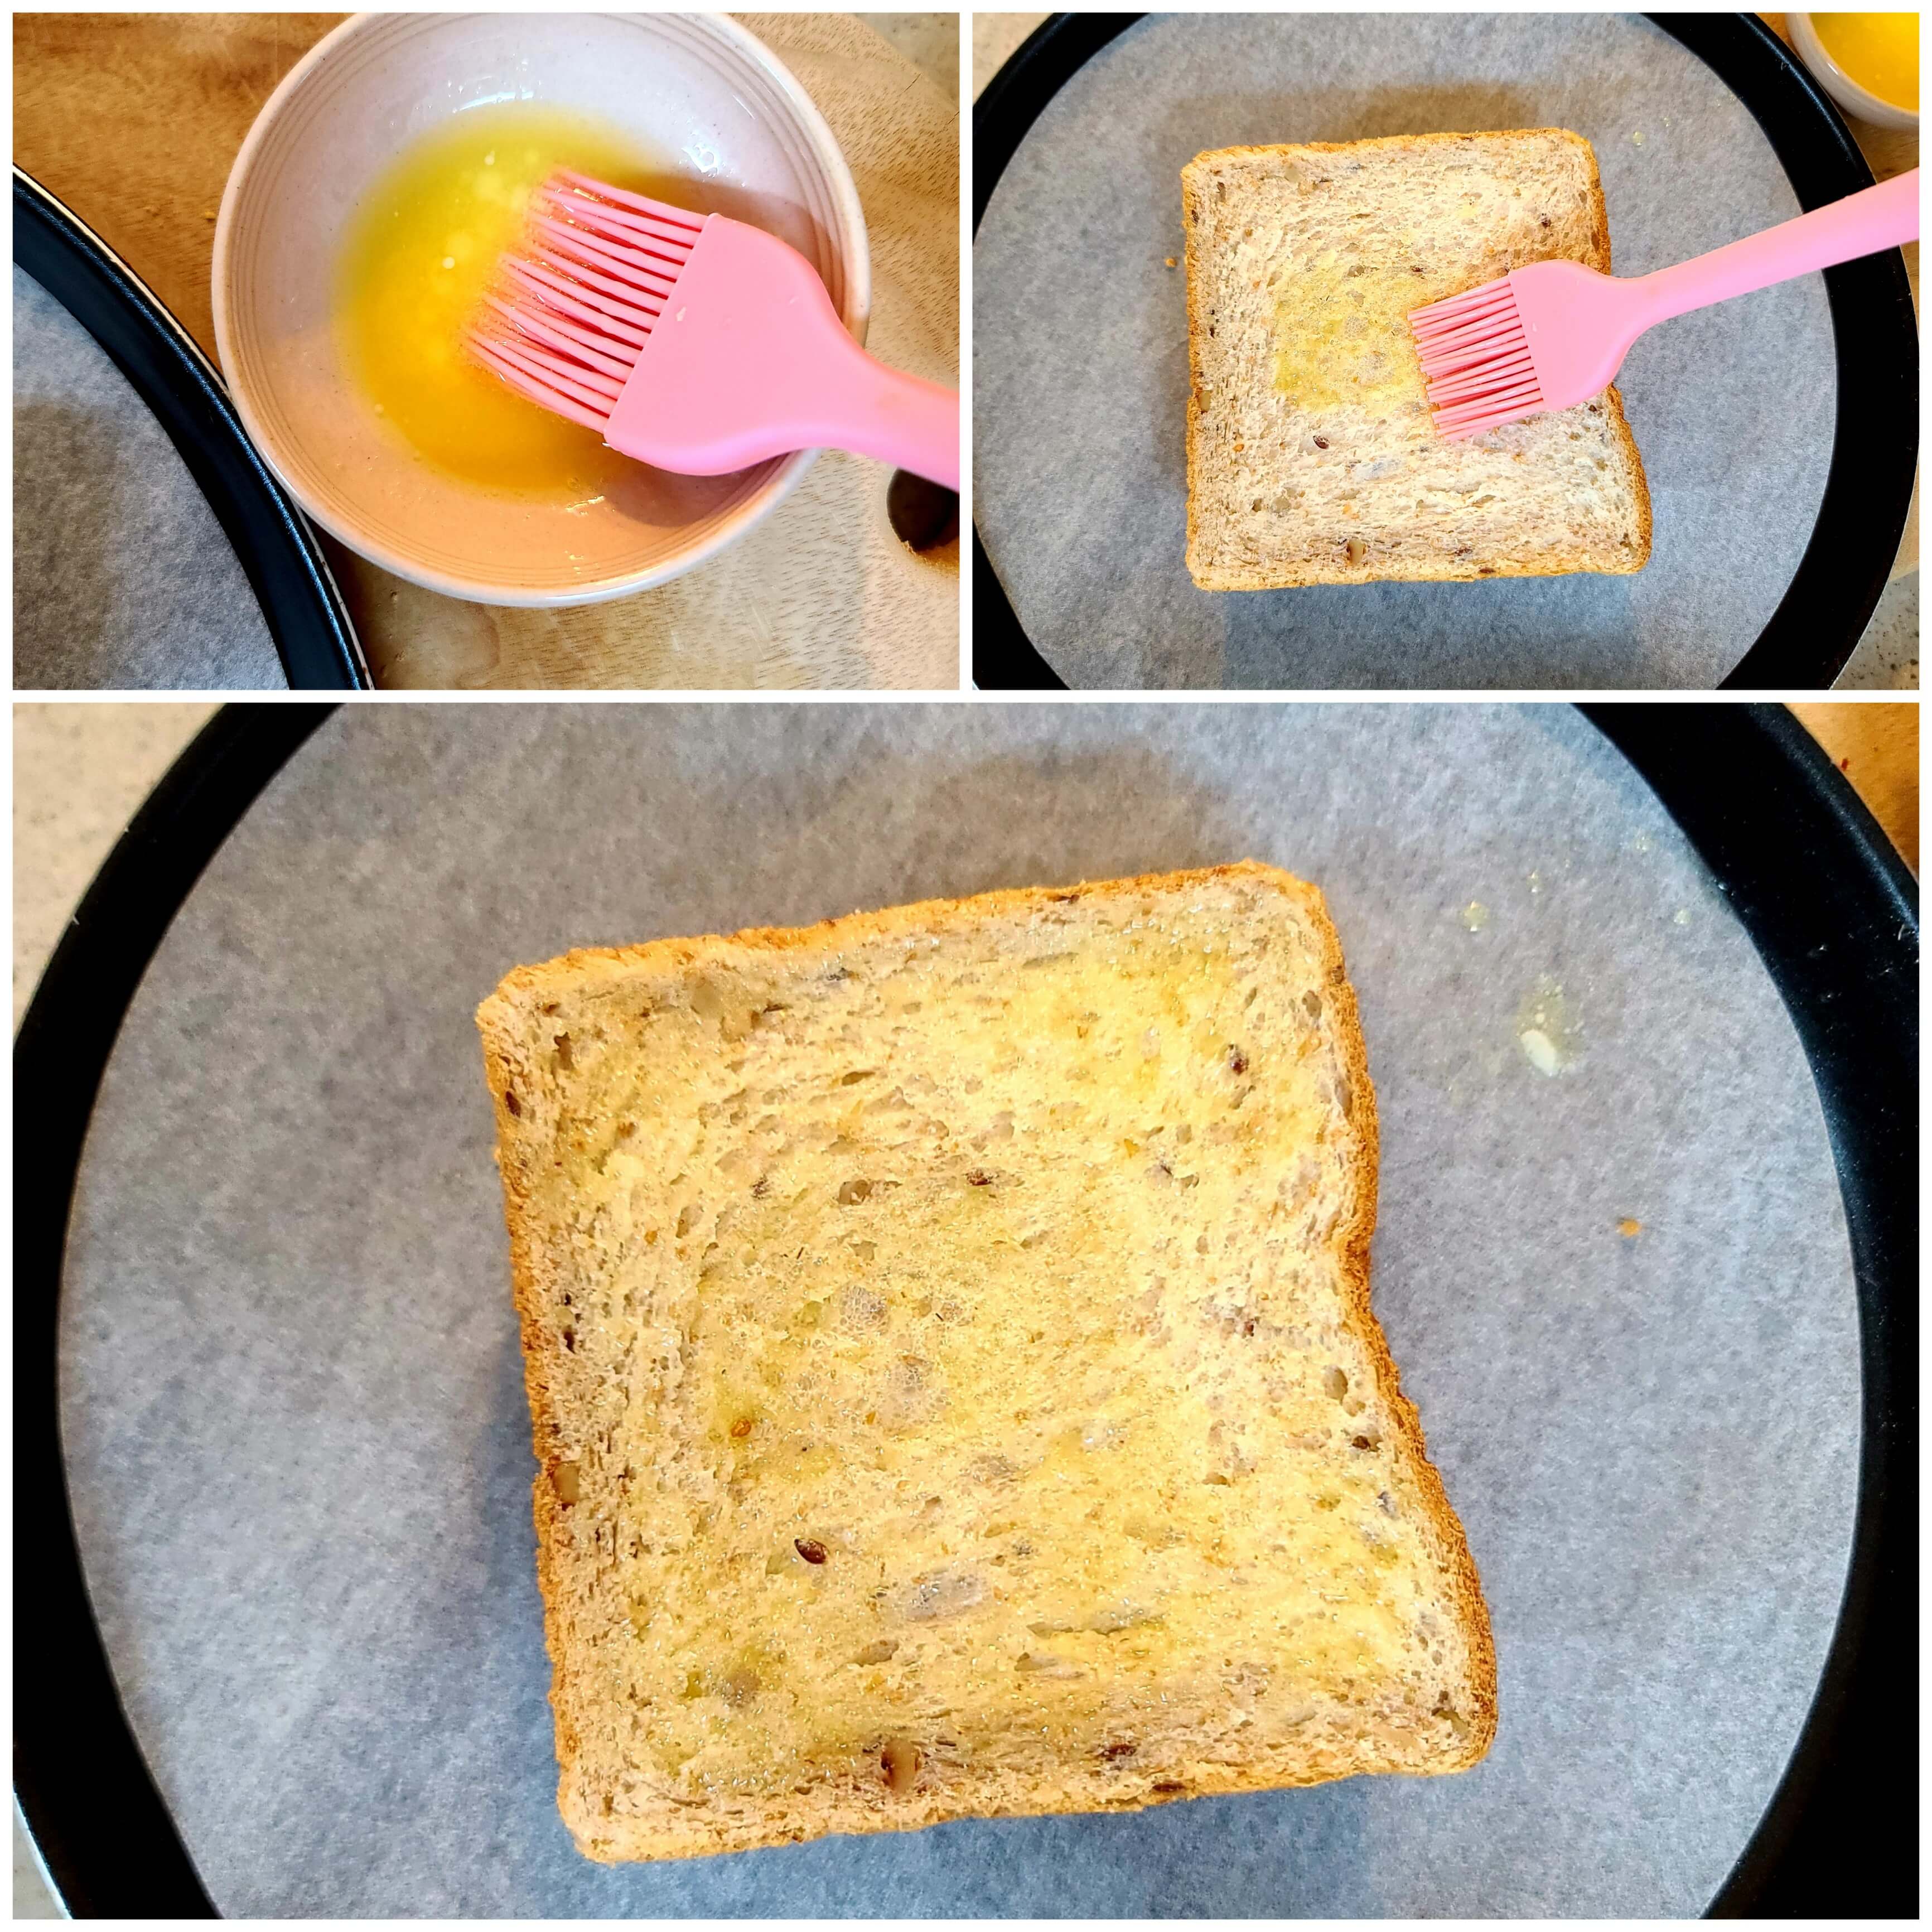 설빙 인절미토스트 만들기-버터 바르기